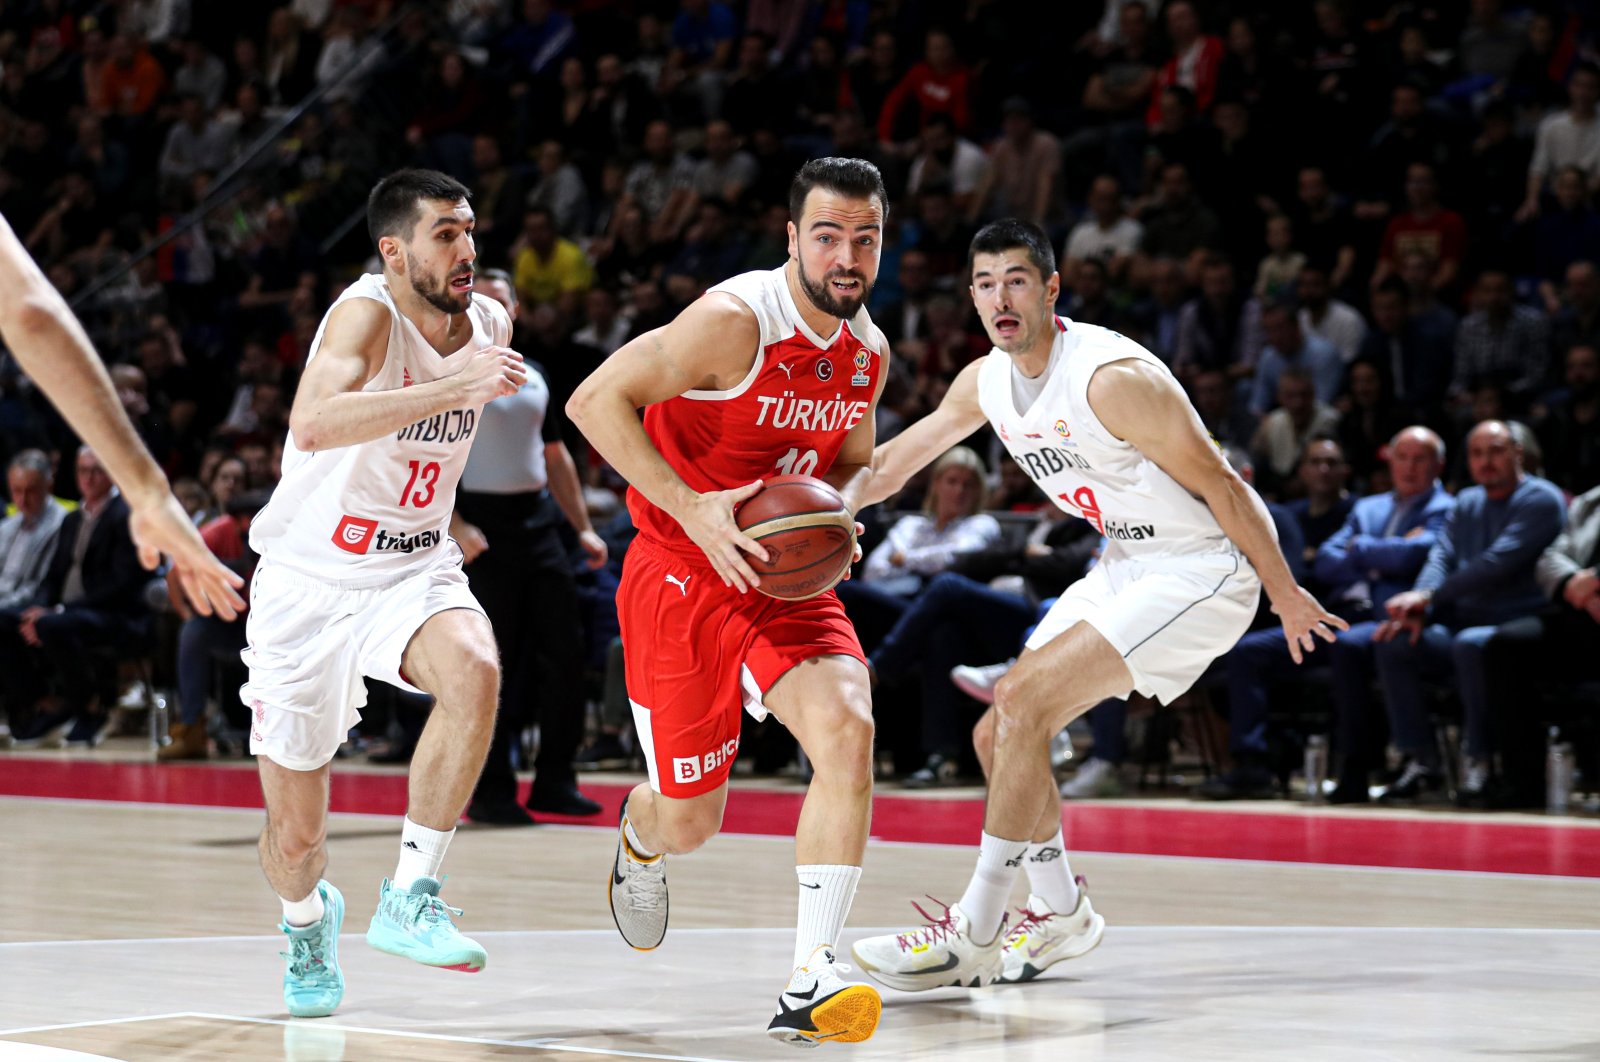 Piala Dunia FIBA ​​Pria 2023 lolos dari Türkiye setelah kalah di Serbia